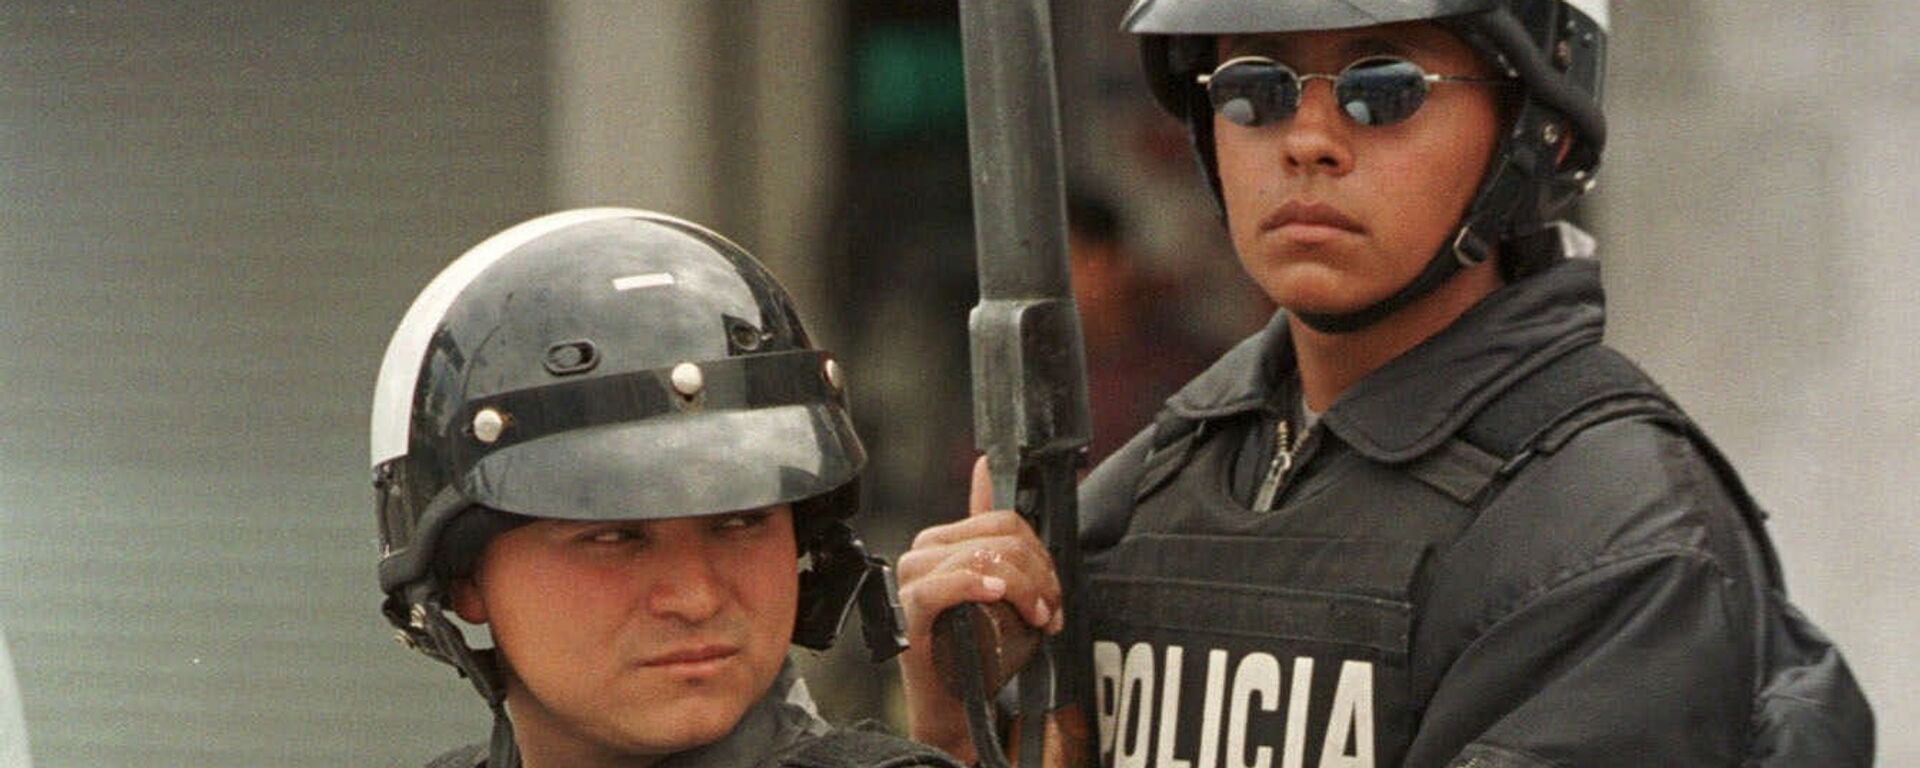 Policía de Ecuador (archivo) - Sputnik Mundo, 1920, 07.09.2021